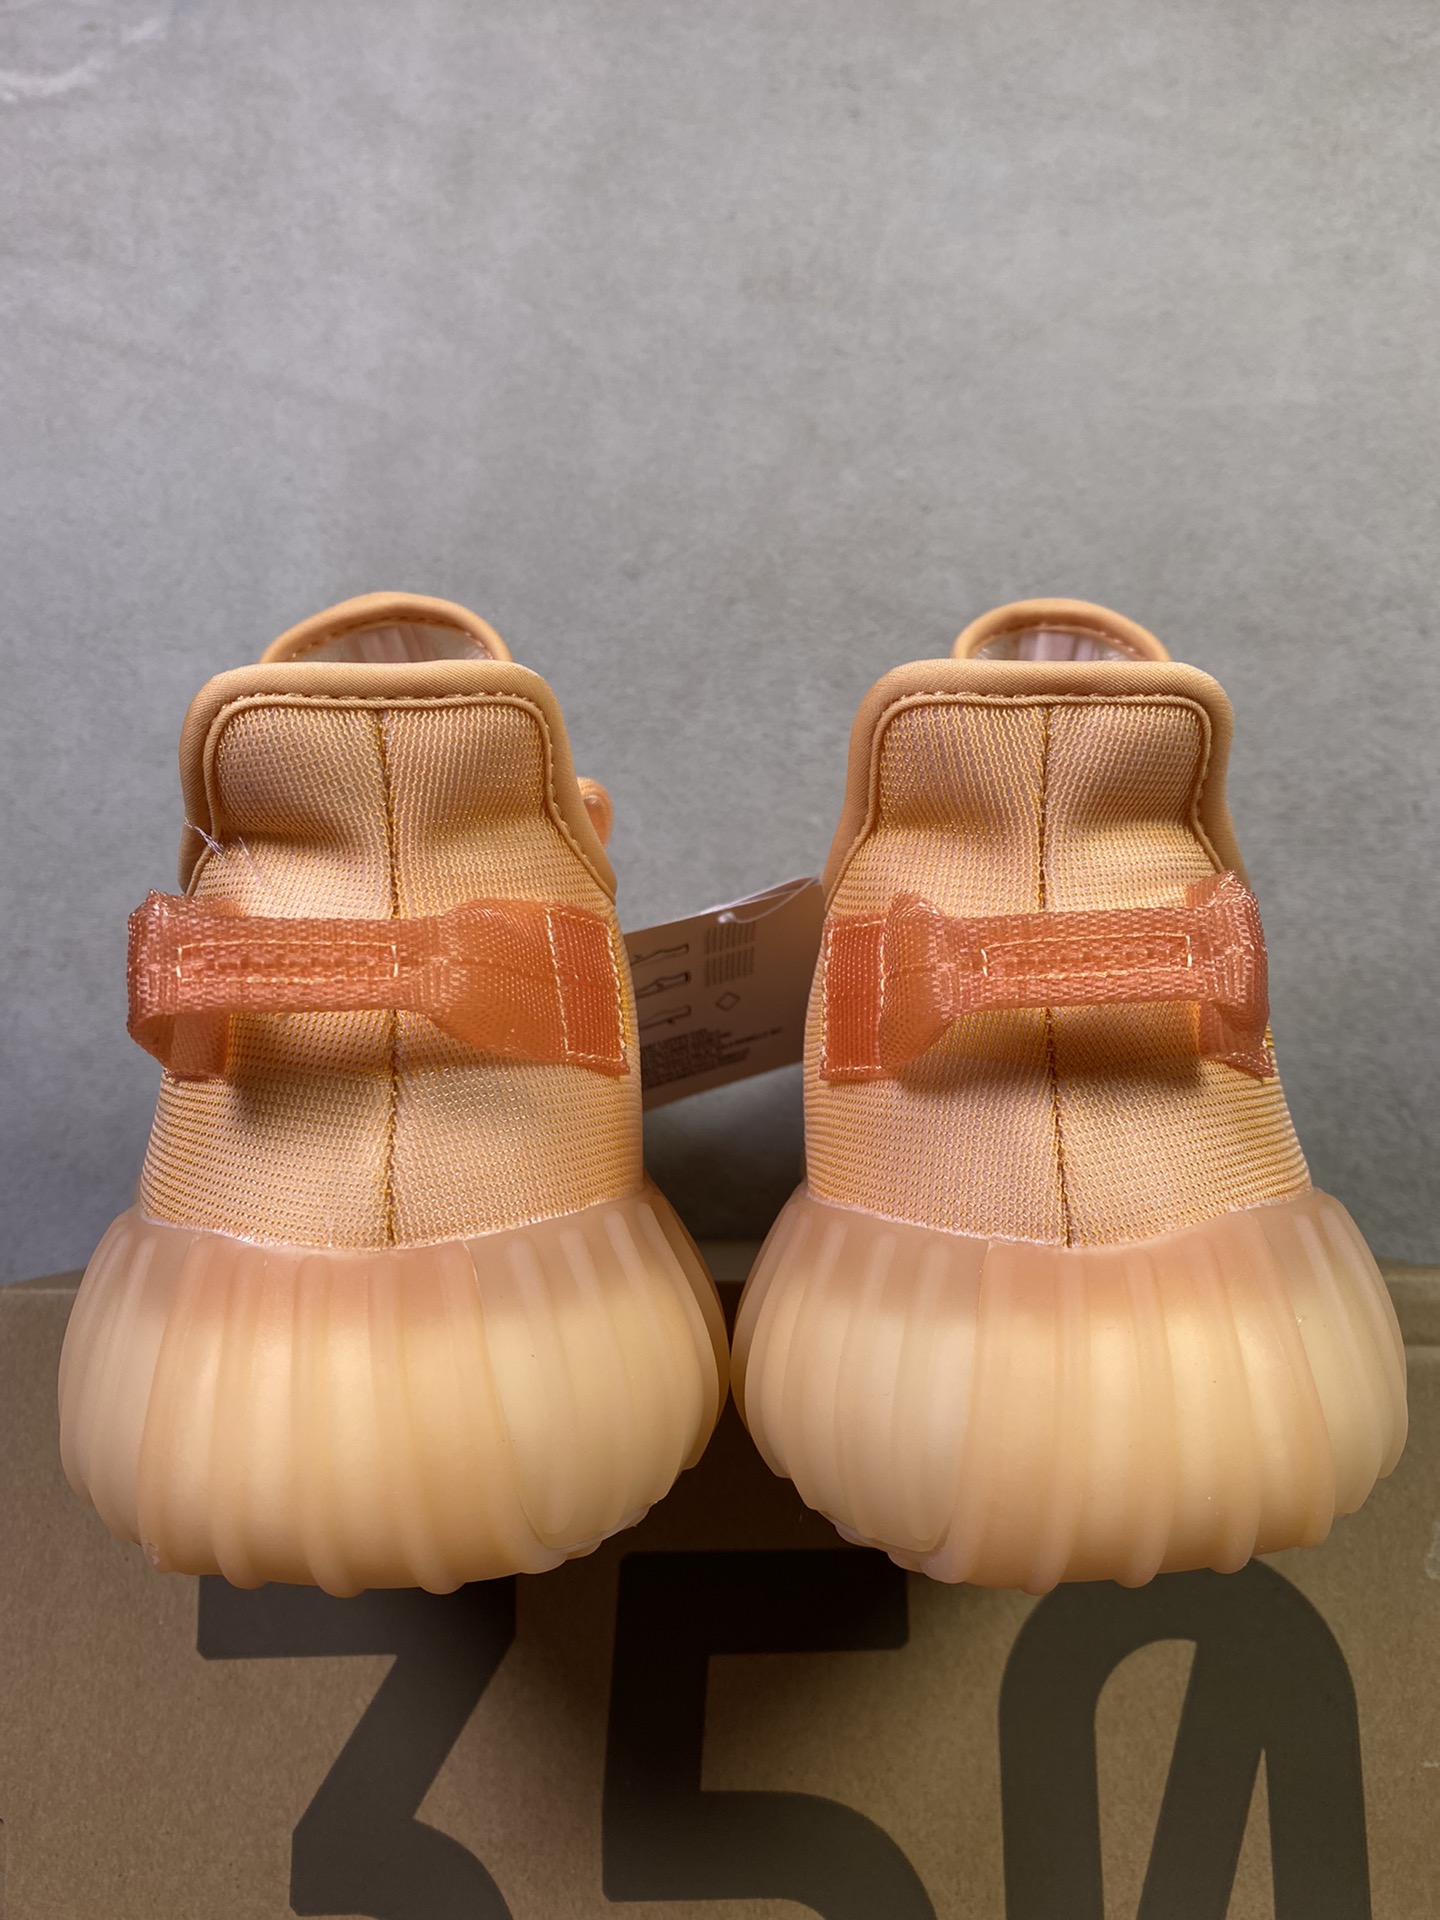 YEEZY350v2“MonoClay”黏土最强性价比版本V2全新全透网纱系列懂货的看鞋型一眼便知不用赘